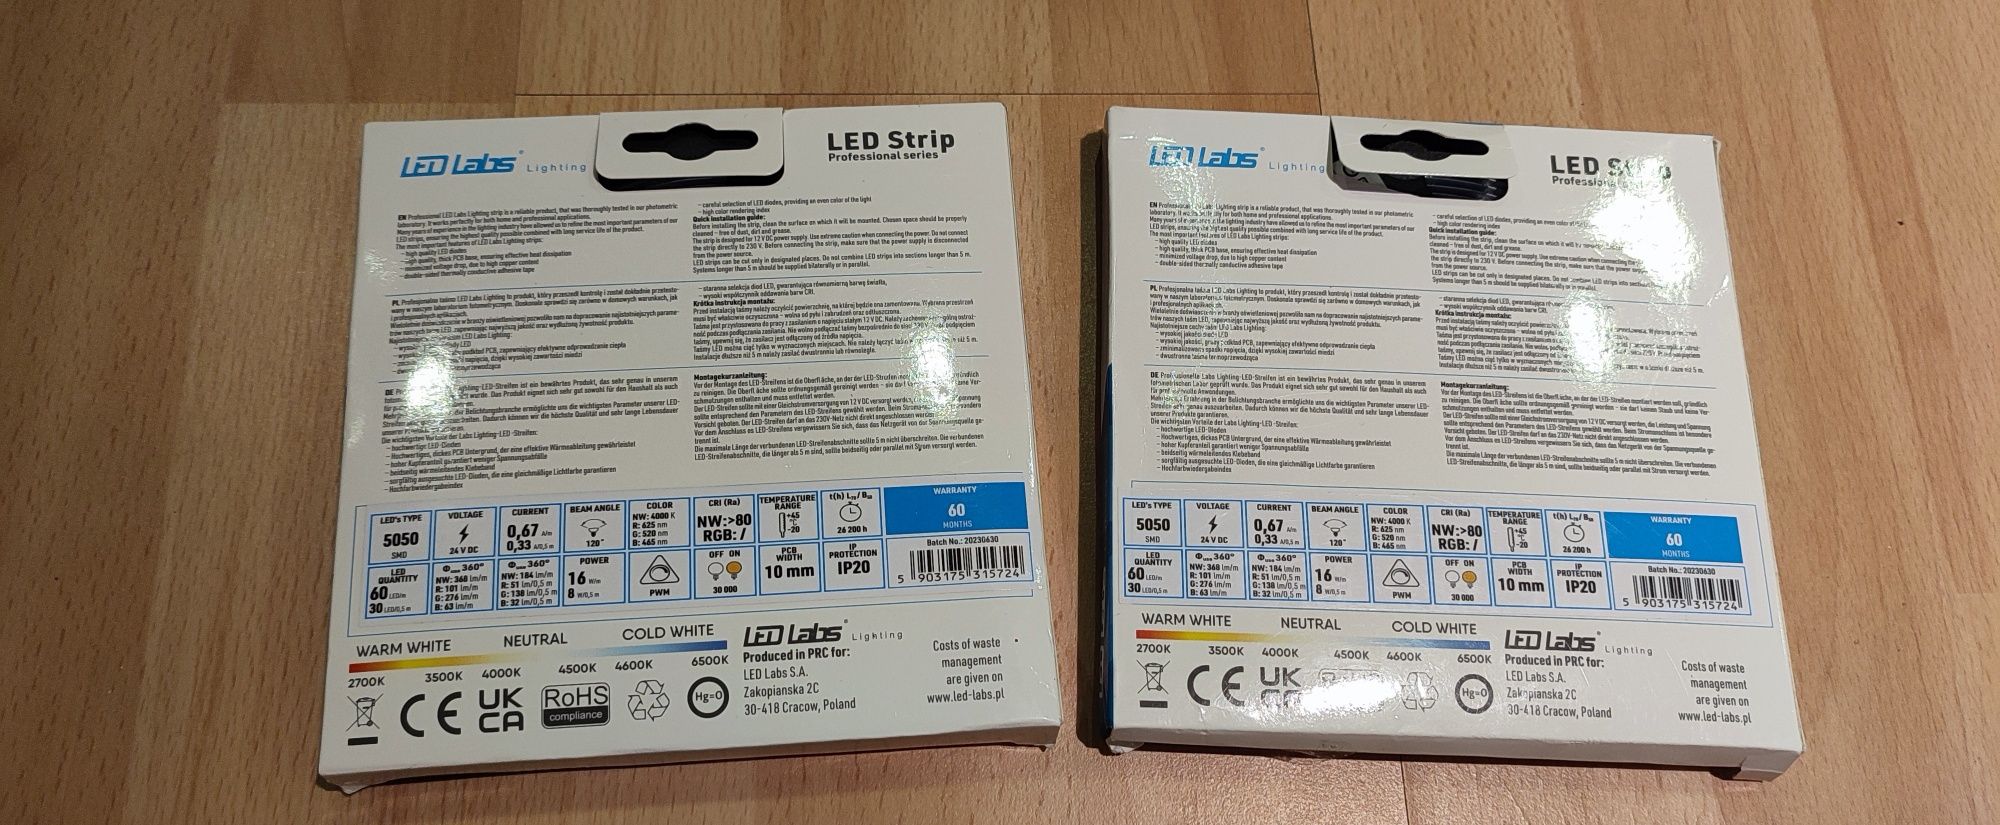 Profesjonalna taśma LED Strip 300 - 5050 RGB + PW 24V. 5 metrów. Tanio